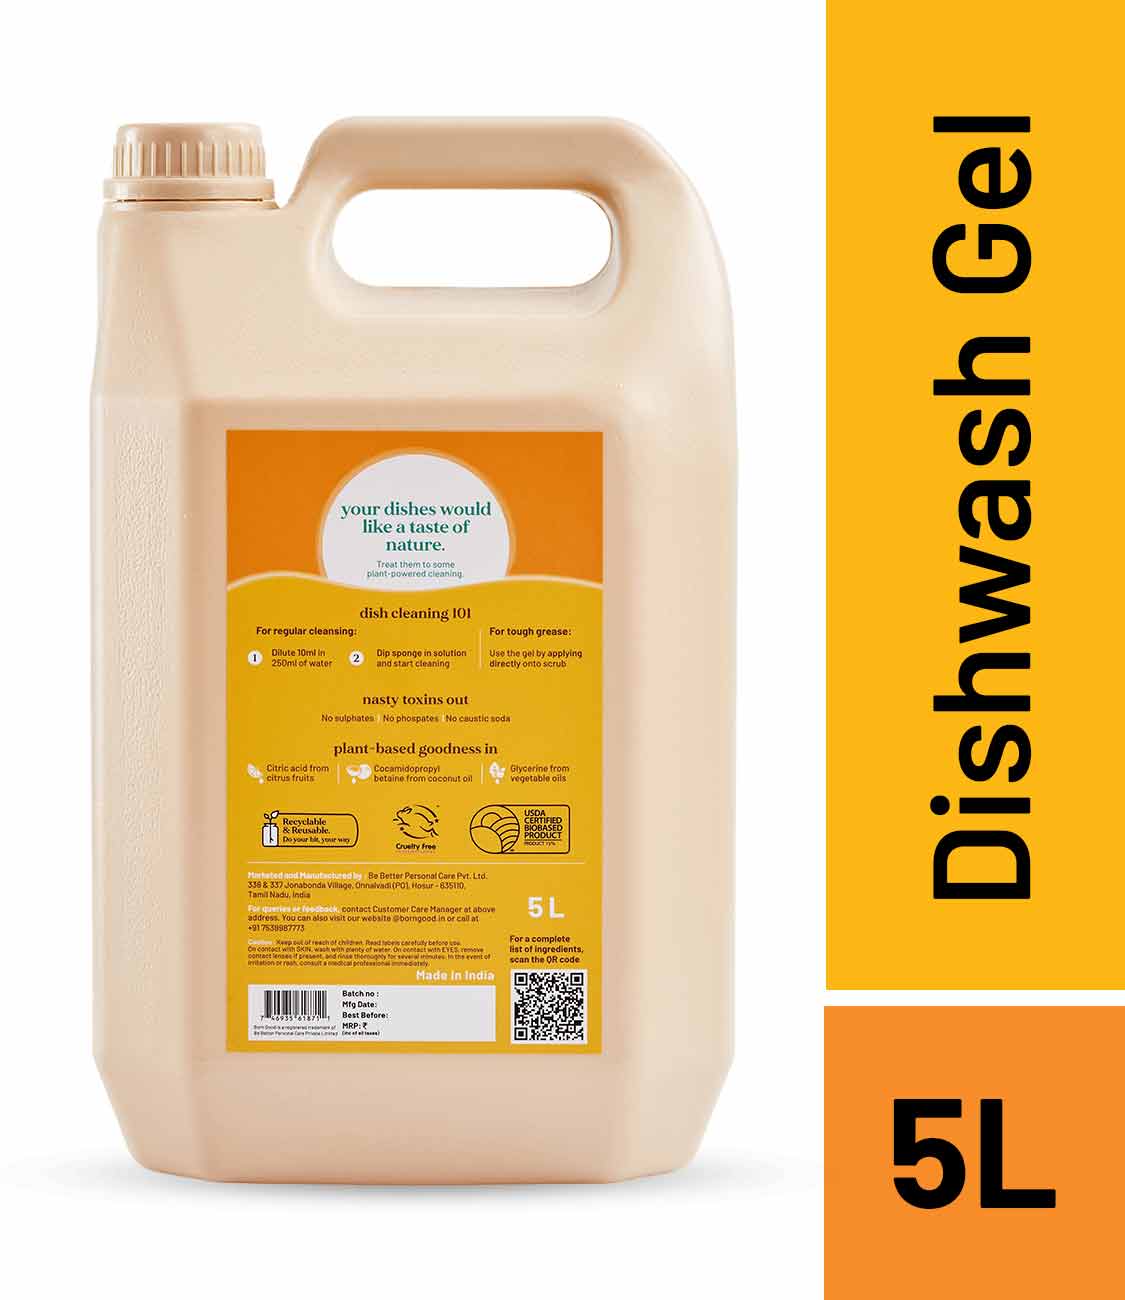 Born Good Plant-based Dishwash Gel -  5 L Can